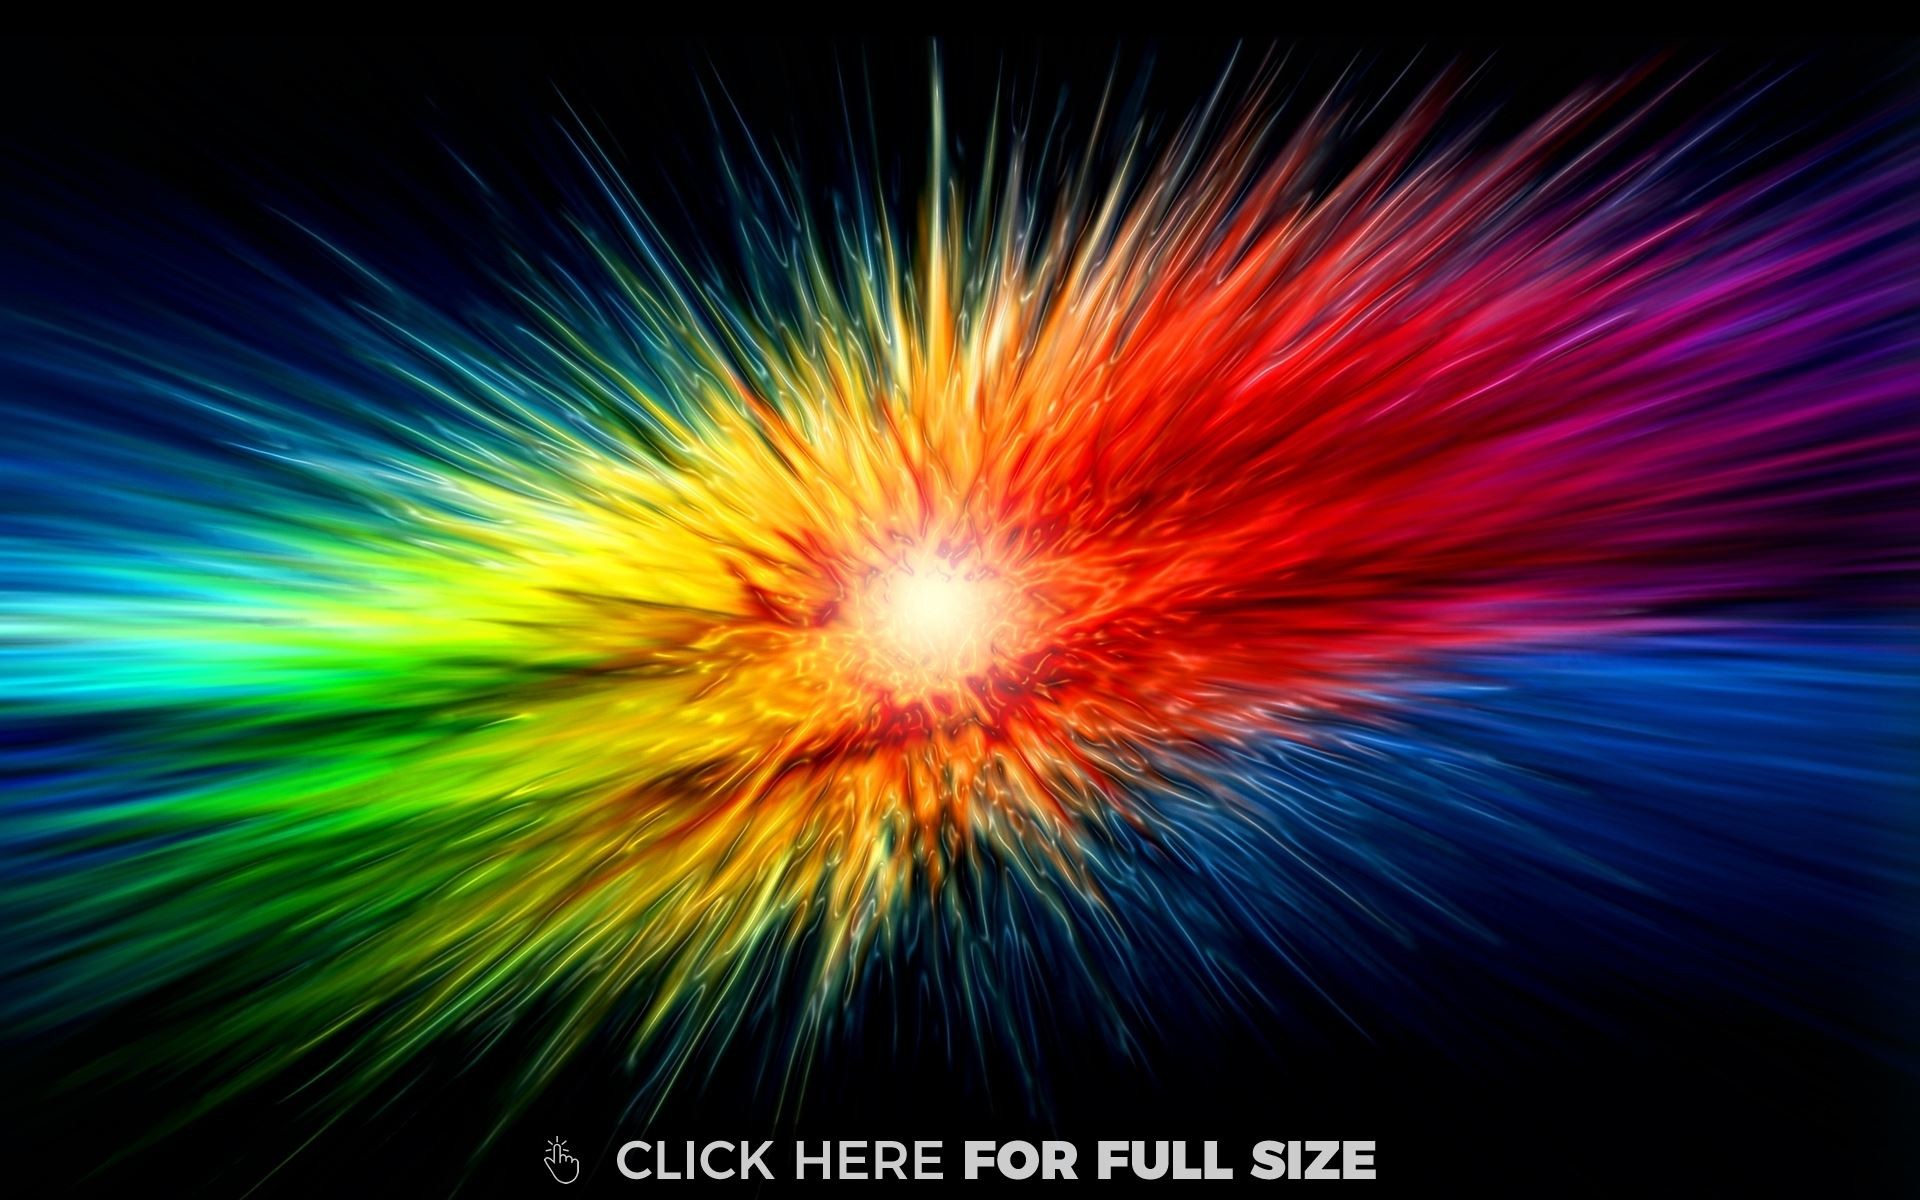 1920x1200 Explore Hd Wallpaper, Desktop Wallpapers, and more! Supernova wallpaper